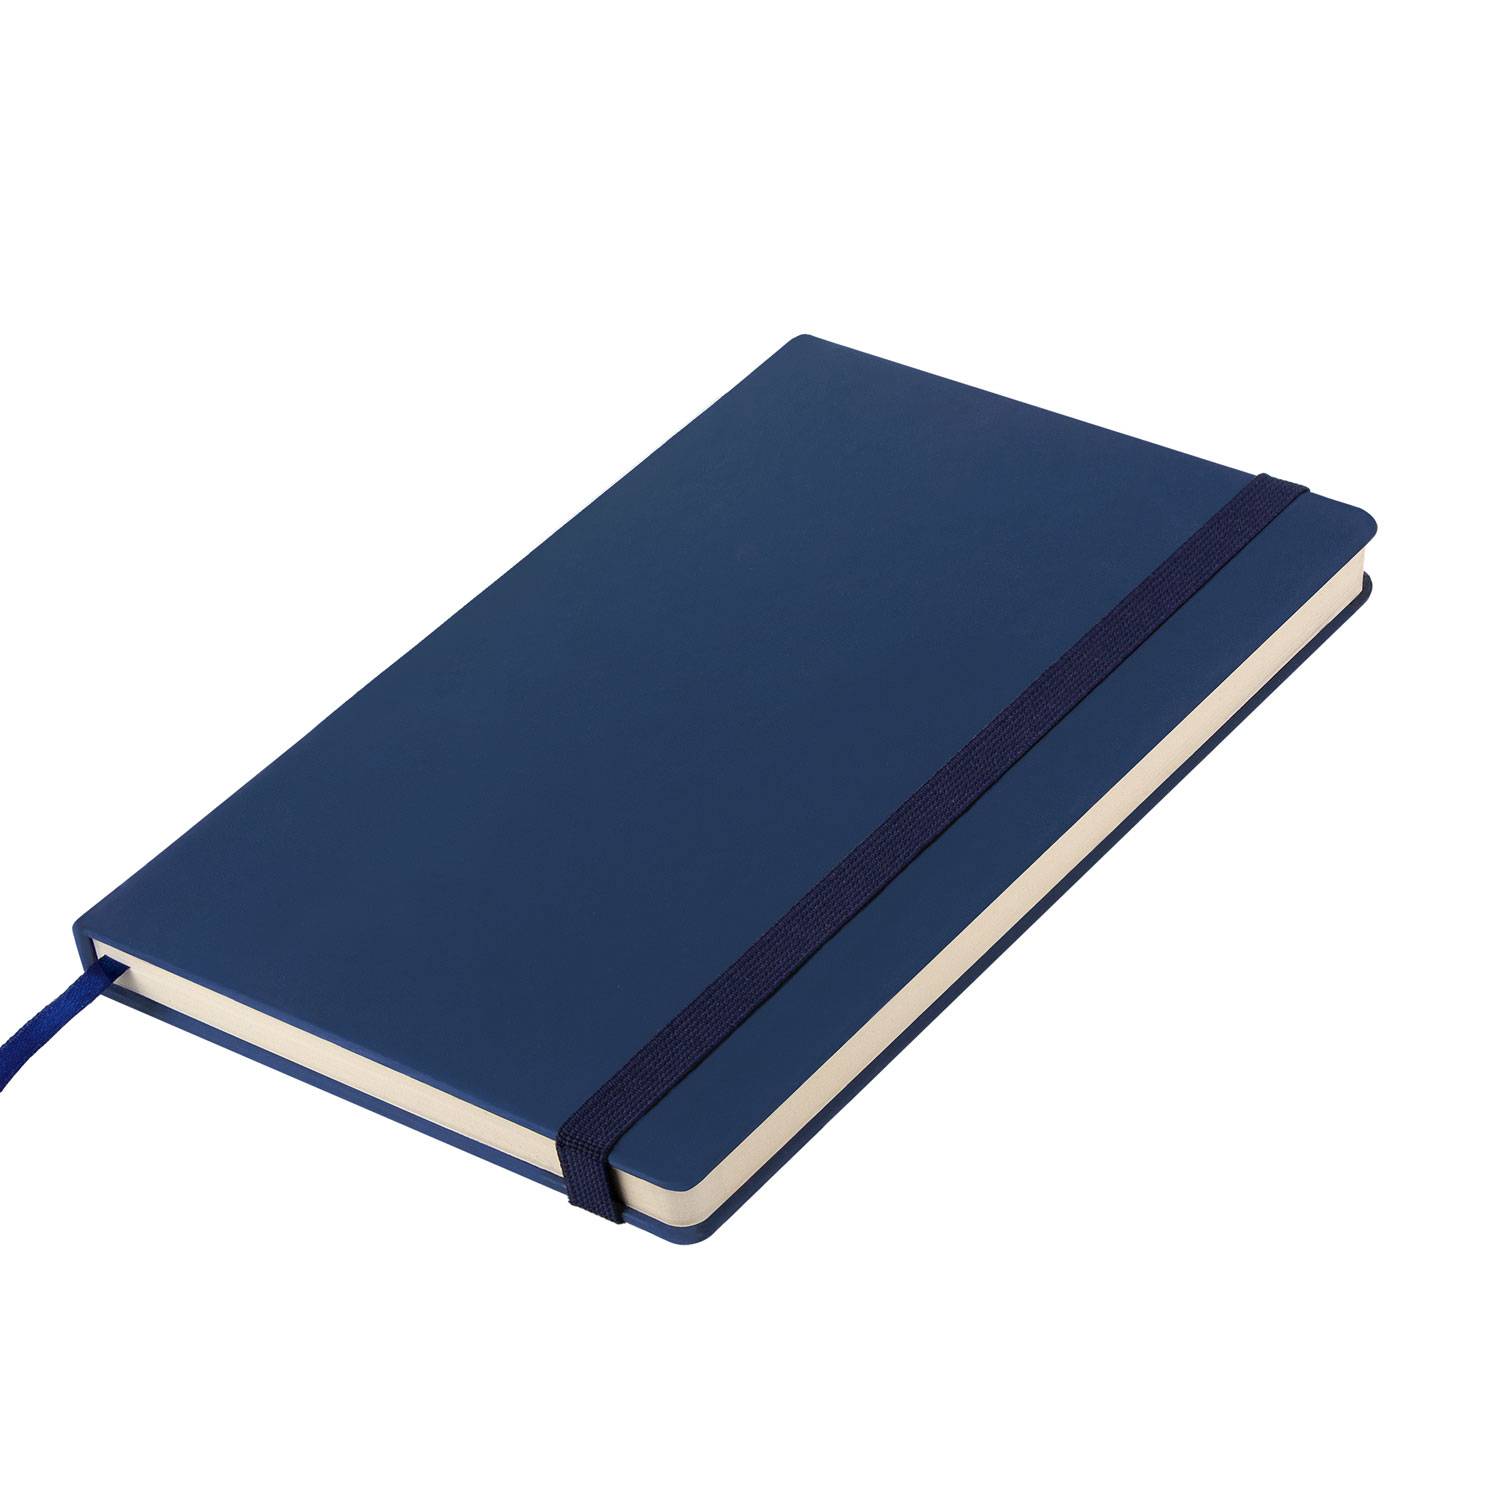 Ежедневник недатированный Alpha BtoBook, синий (без упаковки, без стикера)